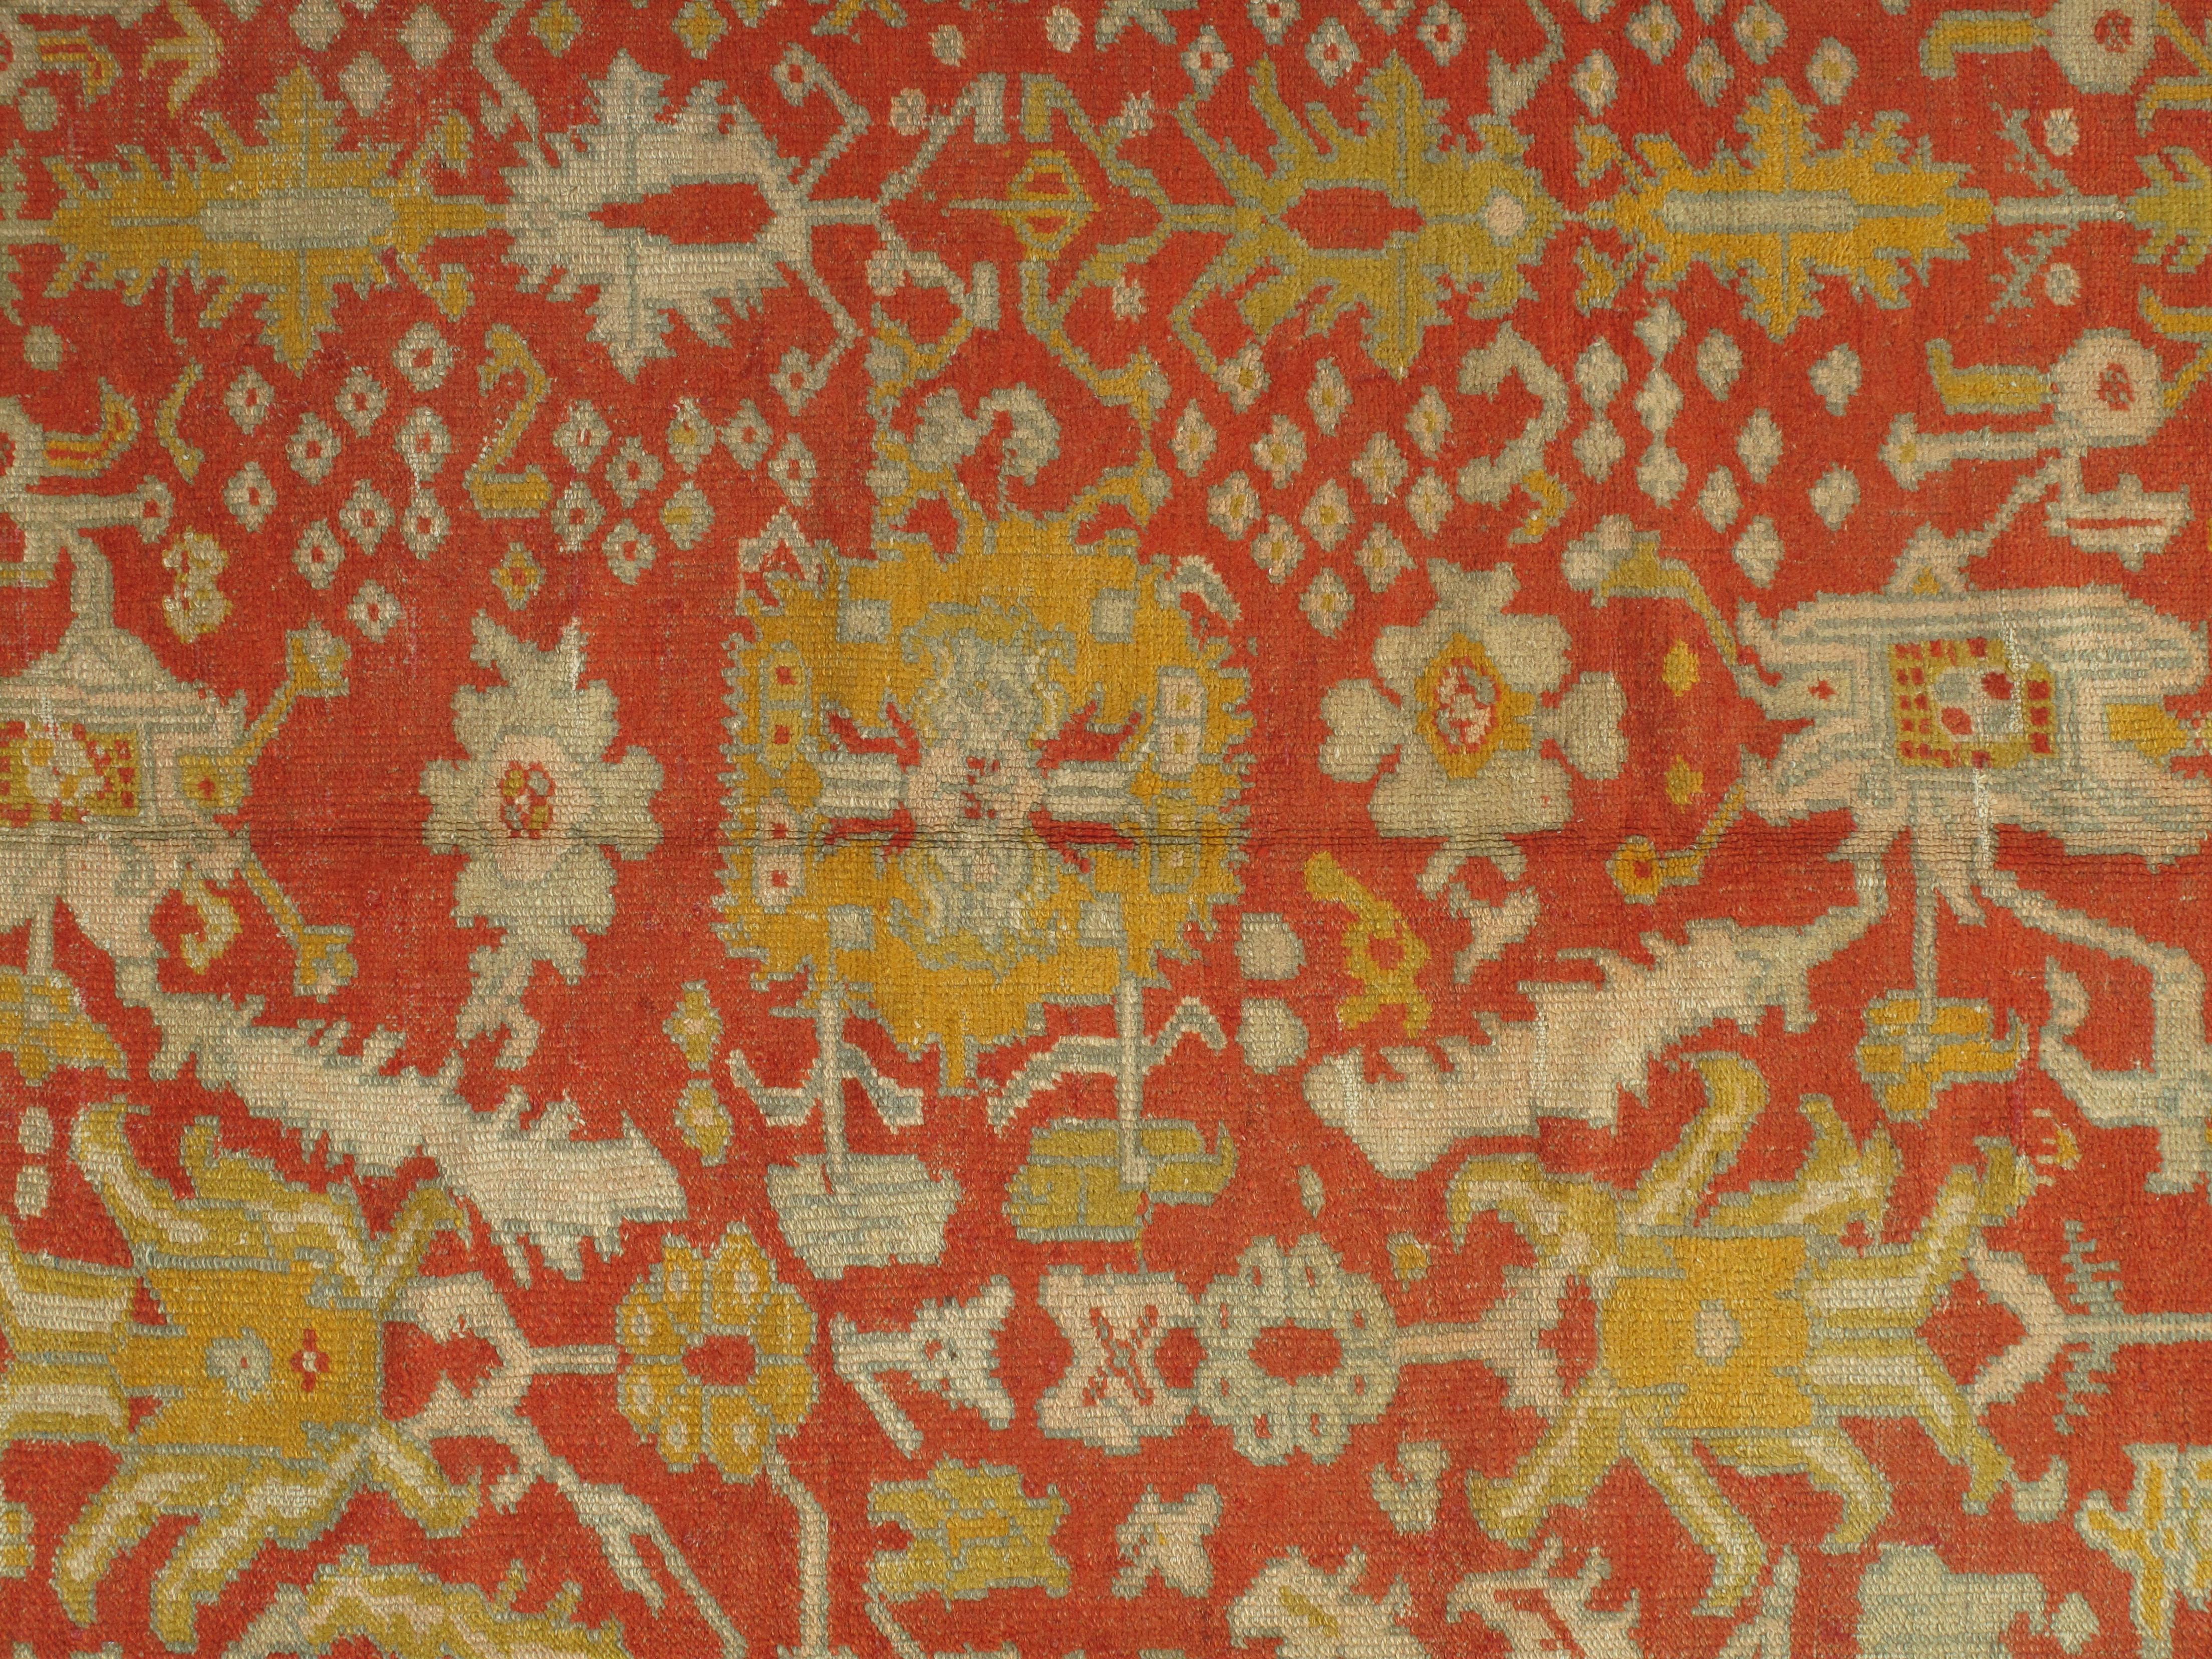 Les tapis Design/One, également connus sous le nom de tapis Ushak, sont tissés dans l'ouest de la Turquie et présentent des motifs distincts, tels que des motifs floraux angulaires à grande échelle. Ils évoquent généralement le calme et la